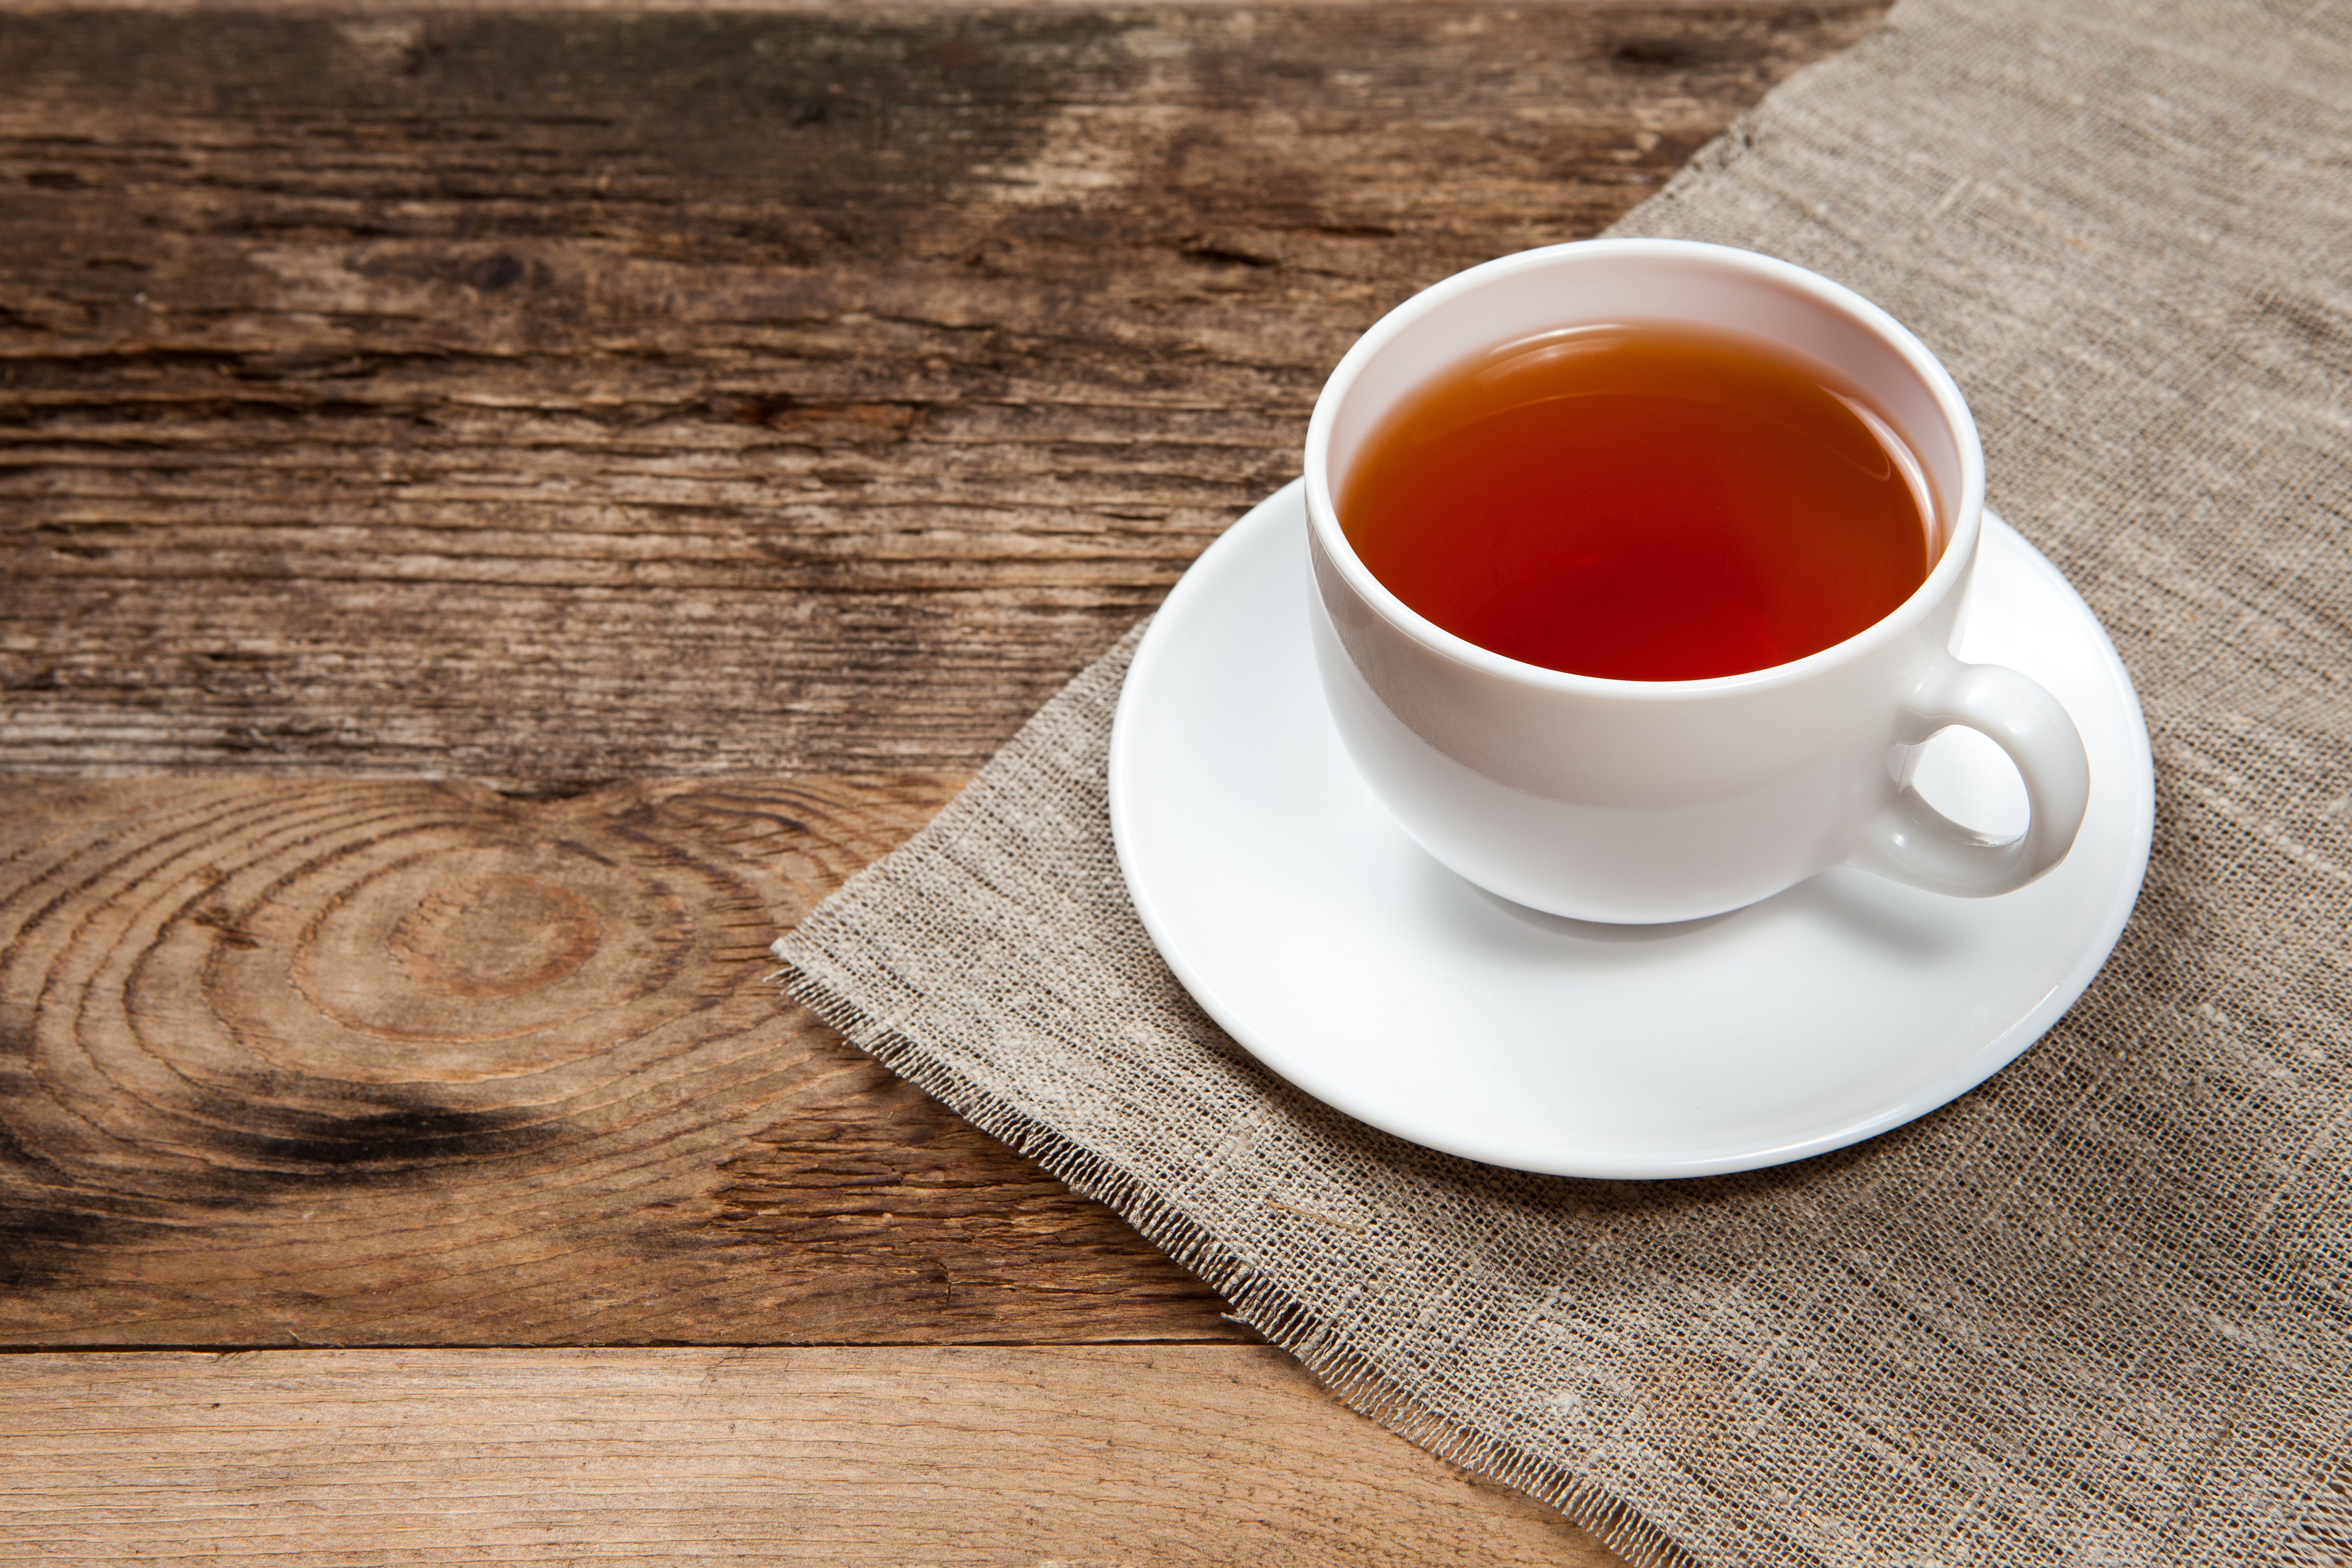 紅茶的健康益處與綠茶相當。  圖/123RF